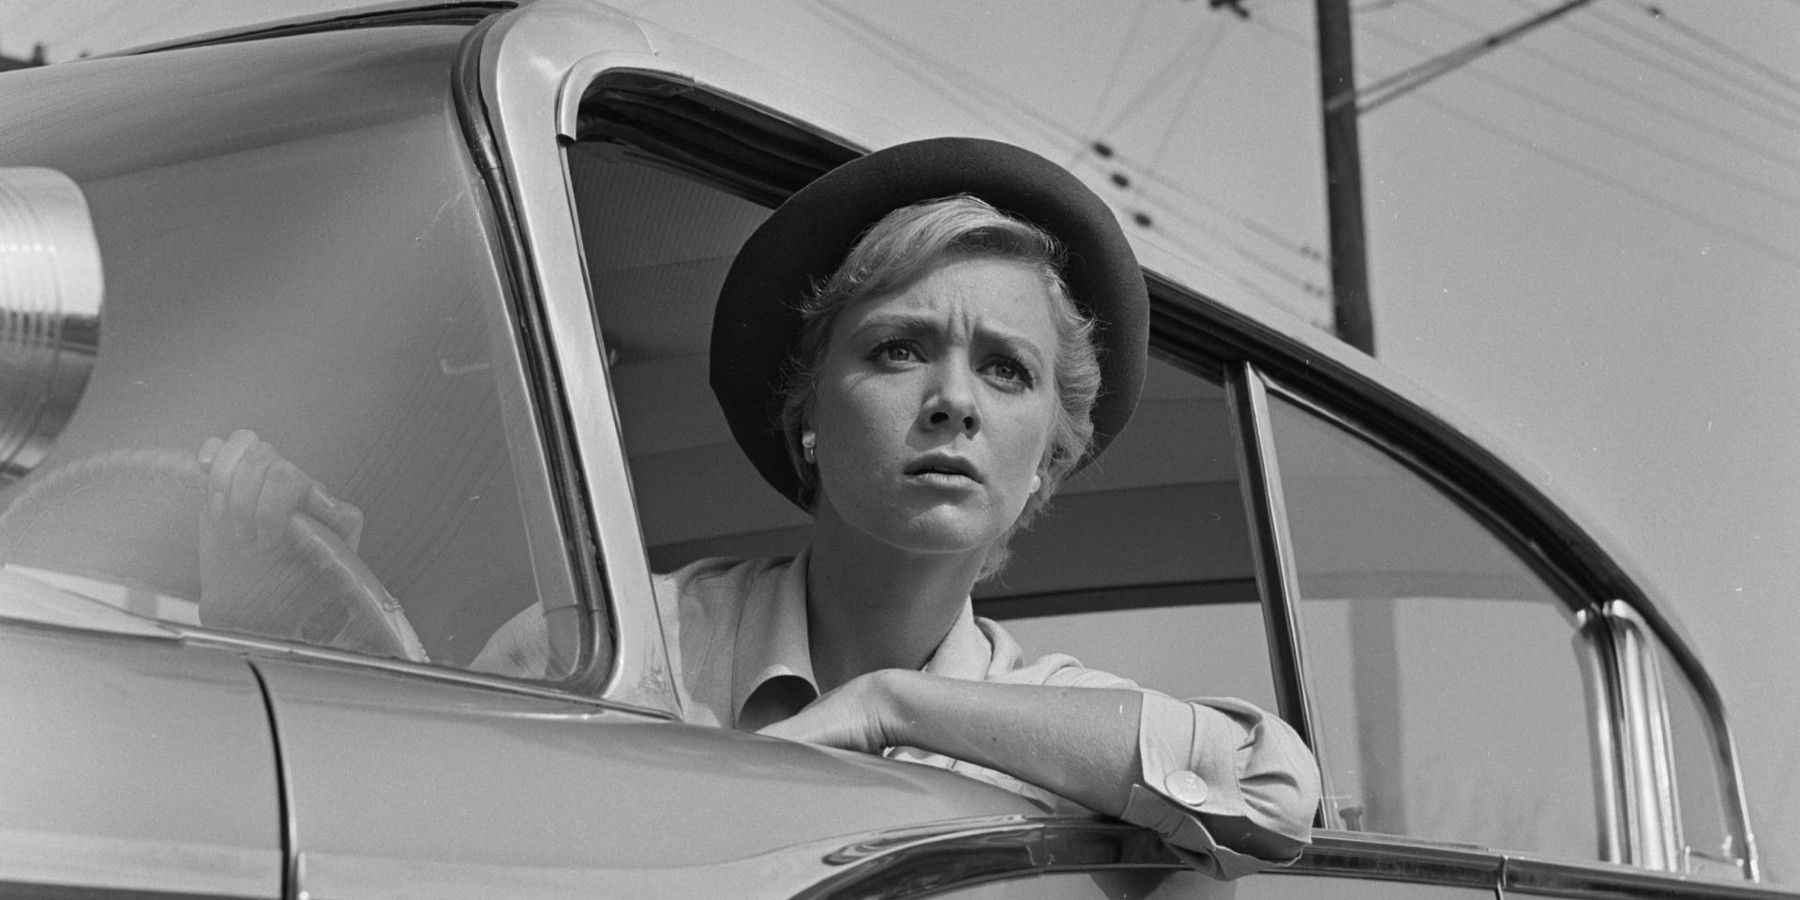 Twilight Zone Inger Stevens olhando para fora da câmera do carro